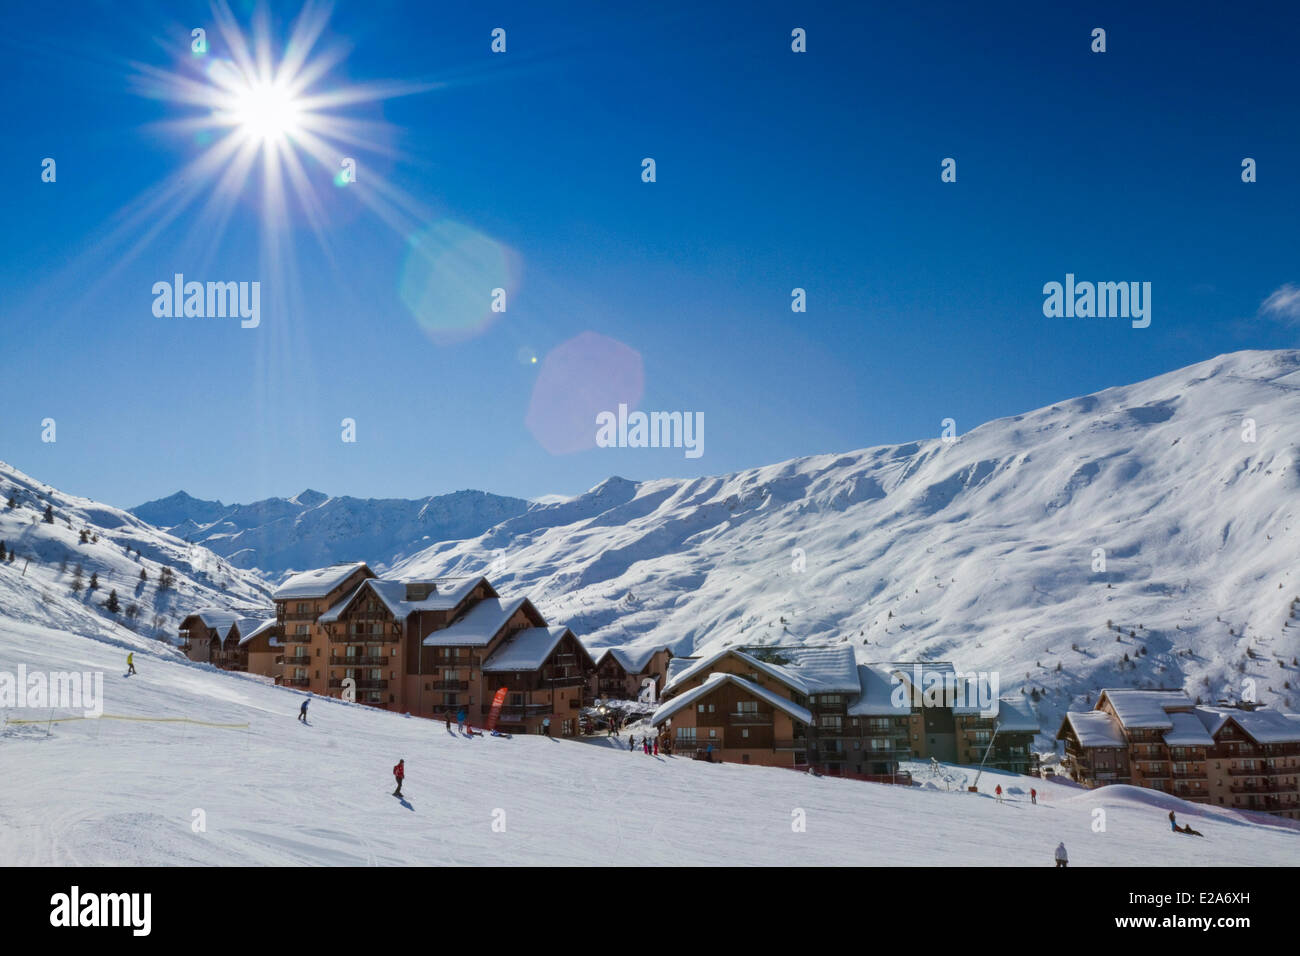 France, Savoie, vallée de la Maurienne, station de ski Valmeinier Banque D'Images